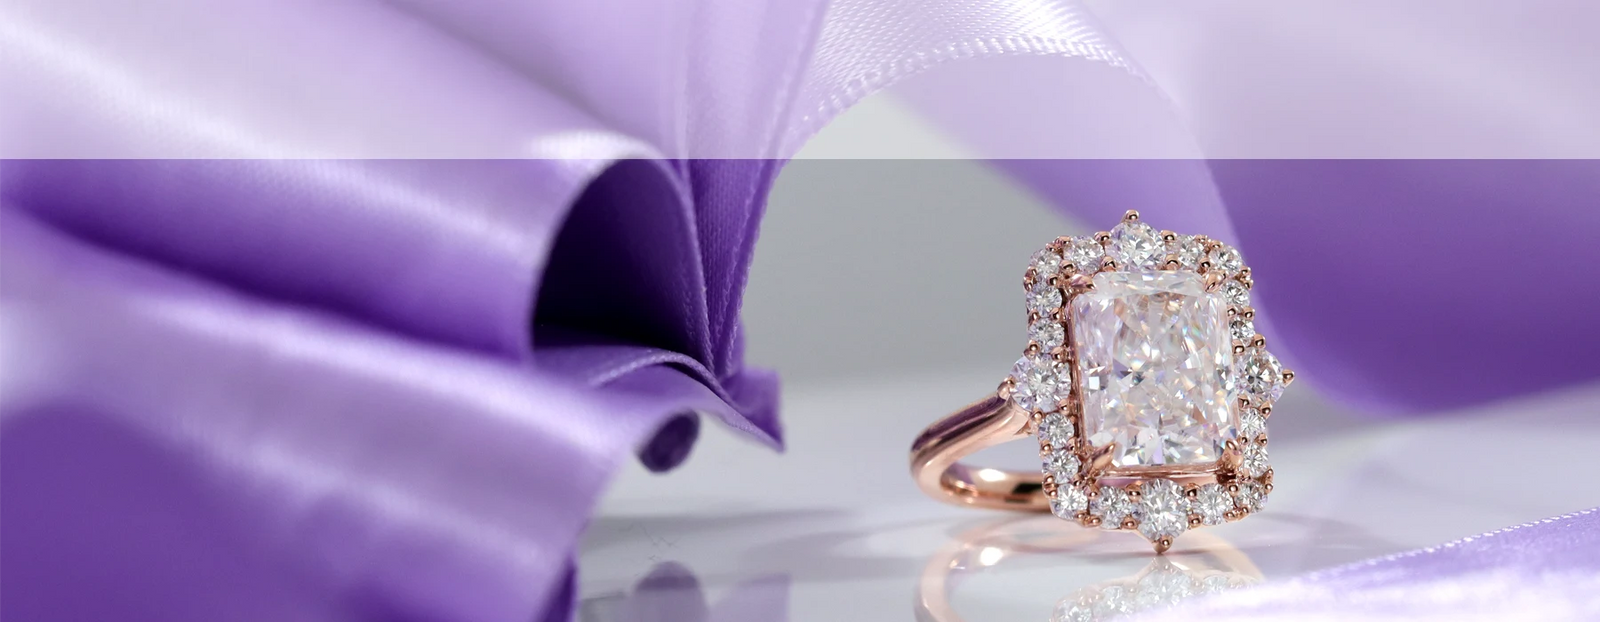 custom design your own gold and platinum diamond engagement ring at Quorri 